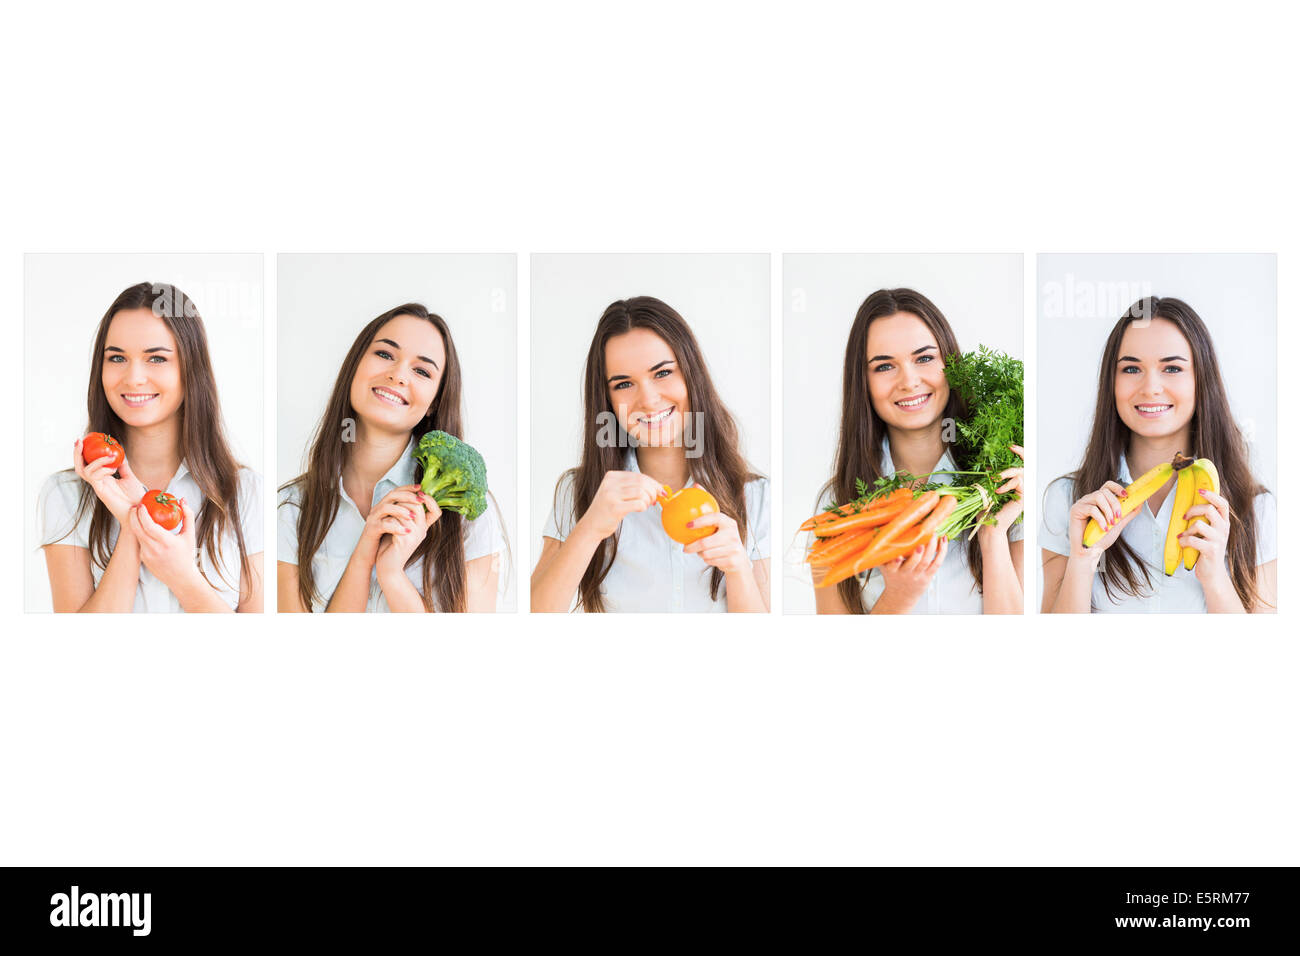 Ilustración de comer cinco frutas y verduras por día, según lo recomendado por el Programa Nacional de Salud y Nutrición (PNNHP). Foto de stock